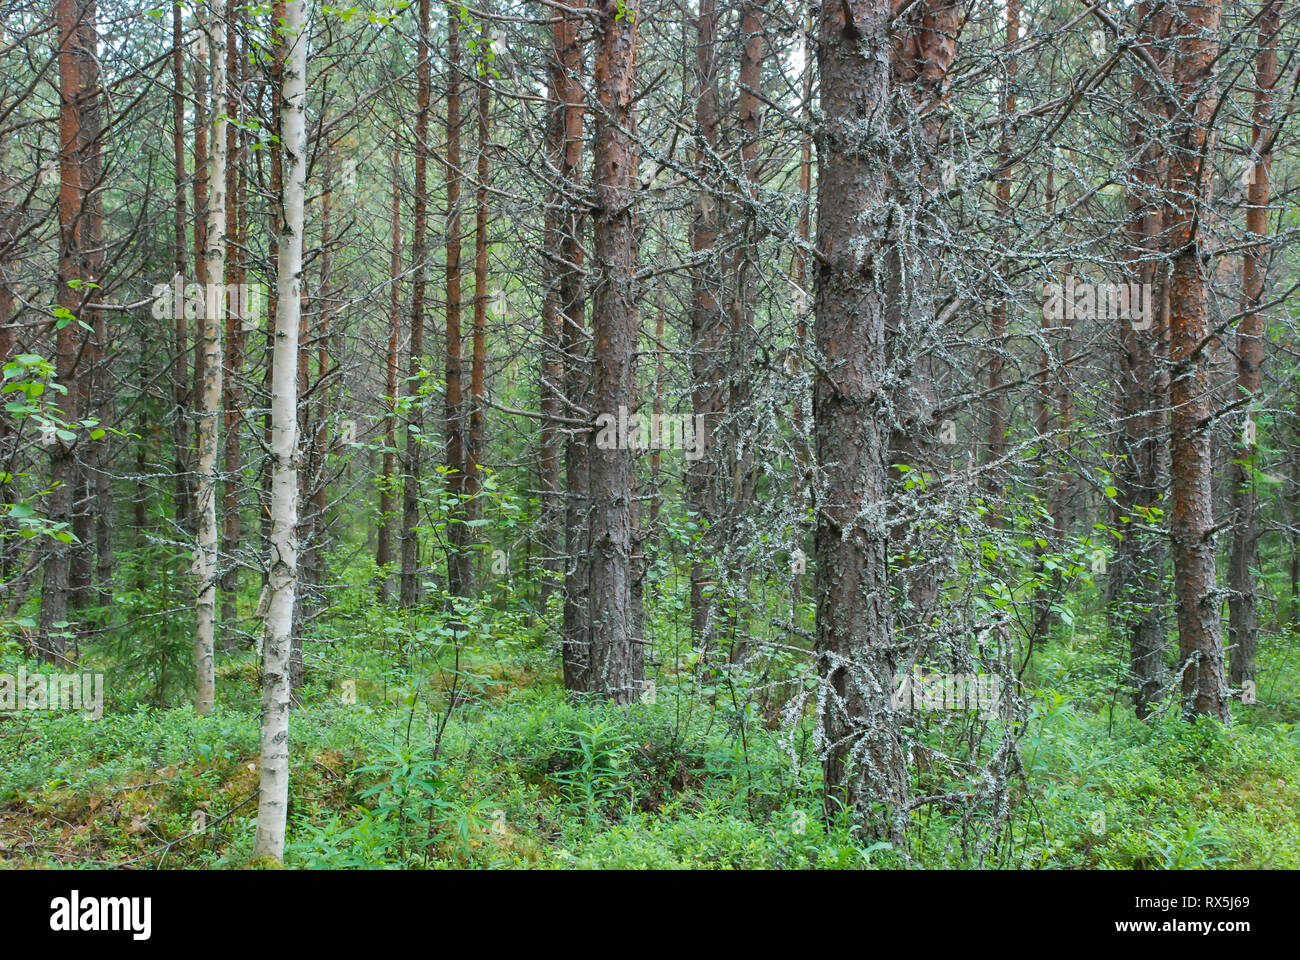 La Taiga Foresta (foresta boreale) biome, naturale paesaggio selvaggio nel nord est della Finlandia, Europa, con alberi di conifere tra cui pini e abeti rossi. Foto Stock